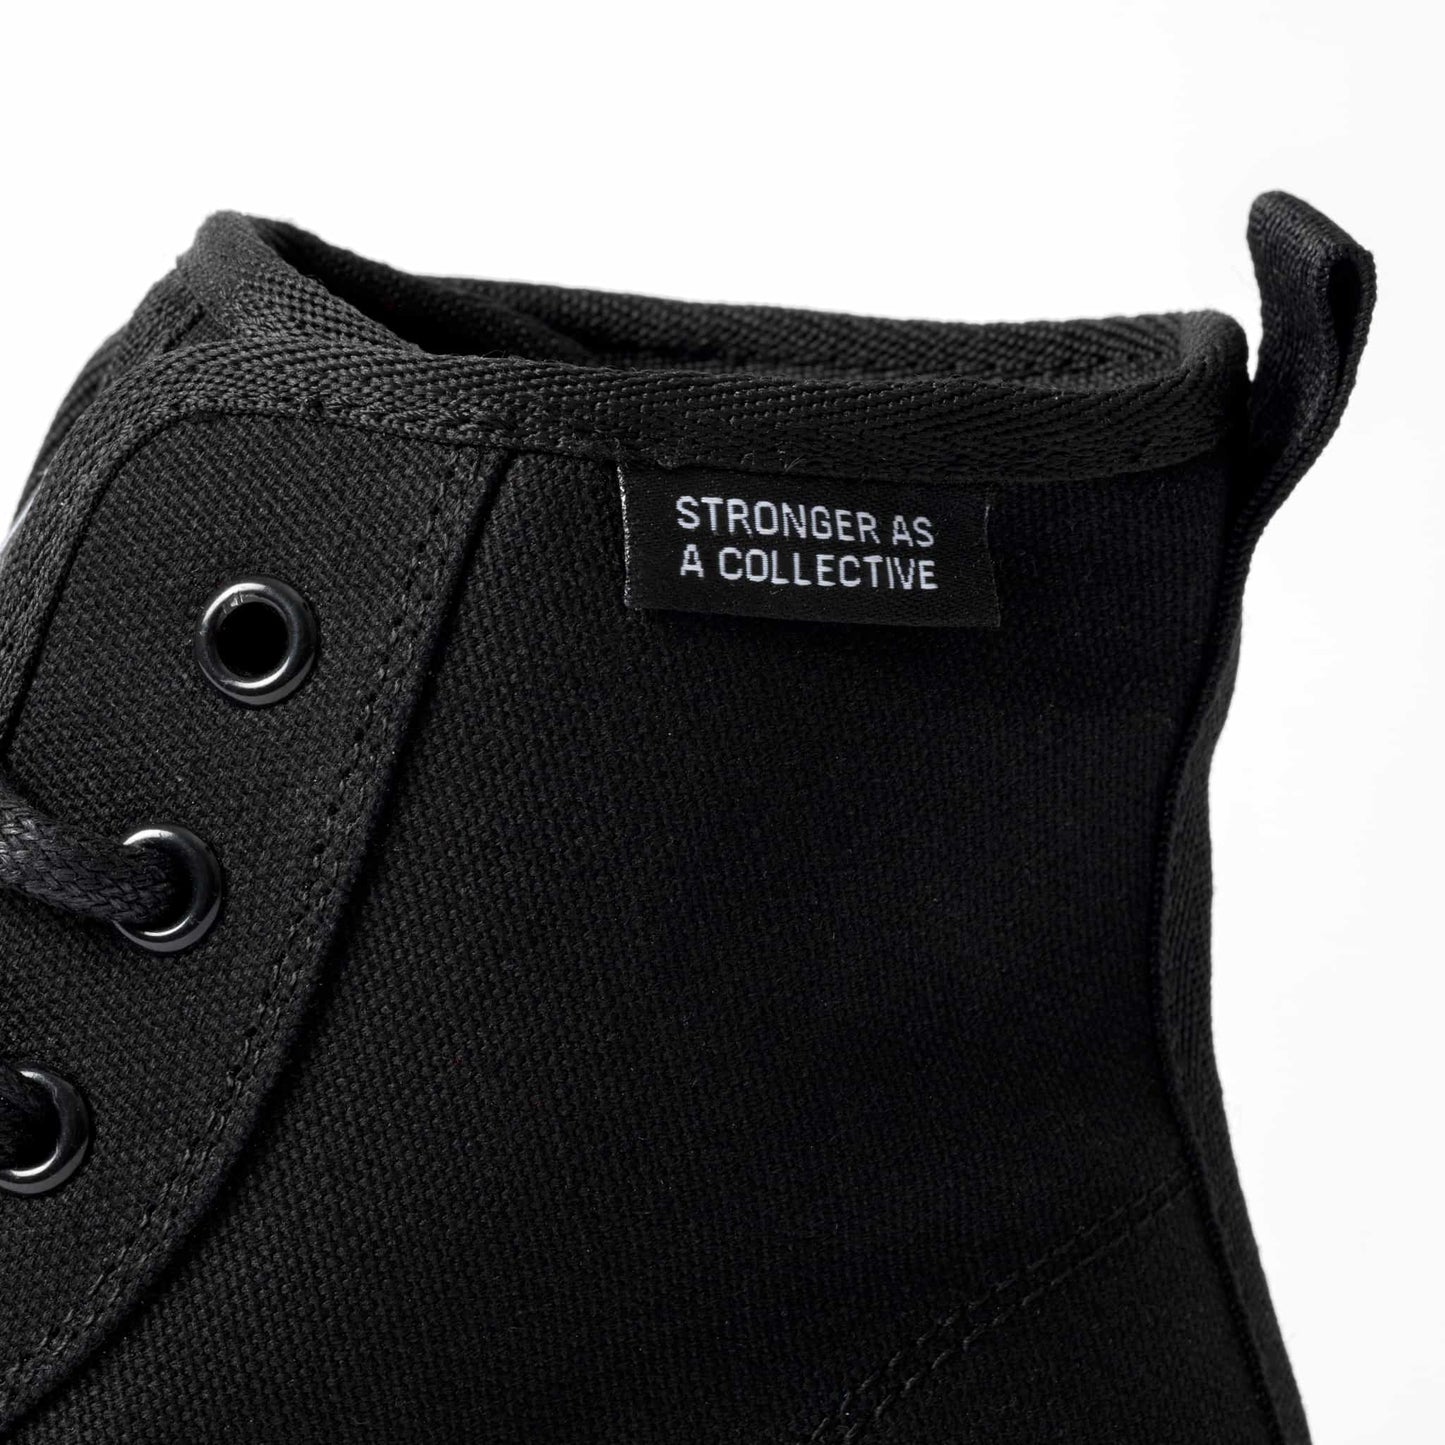 Surge Hi Sneakers - Black